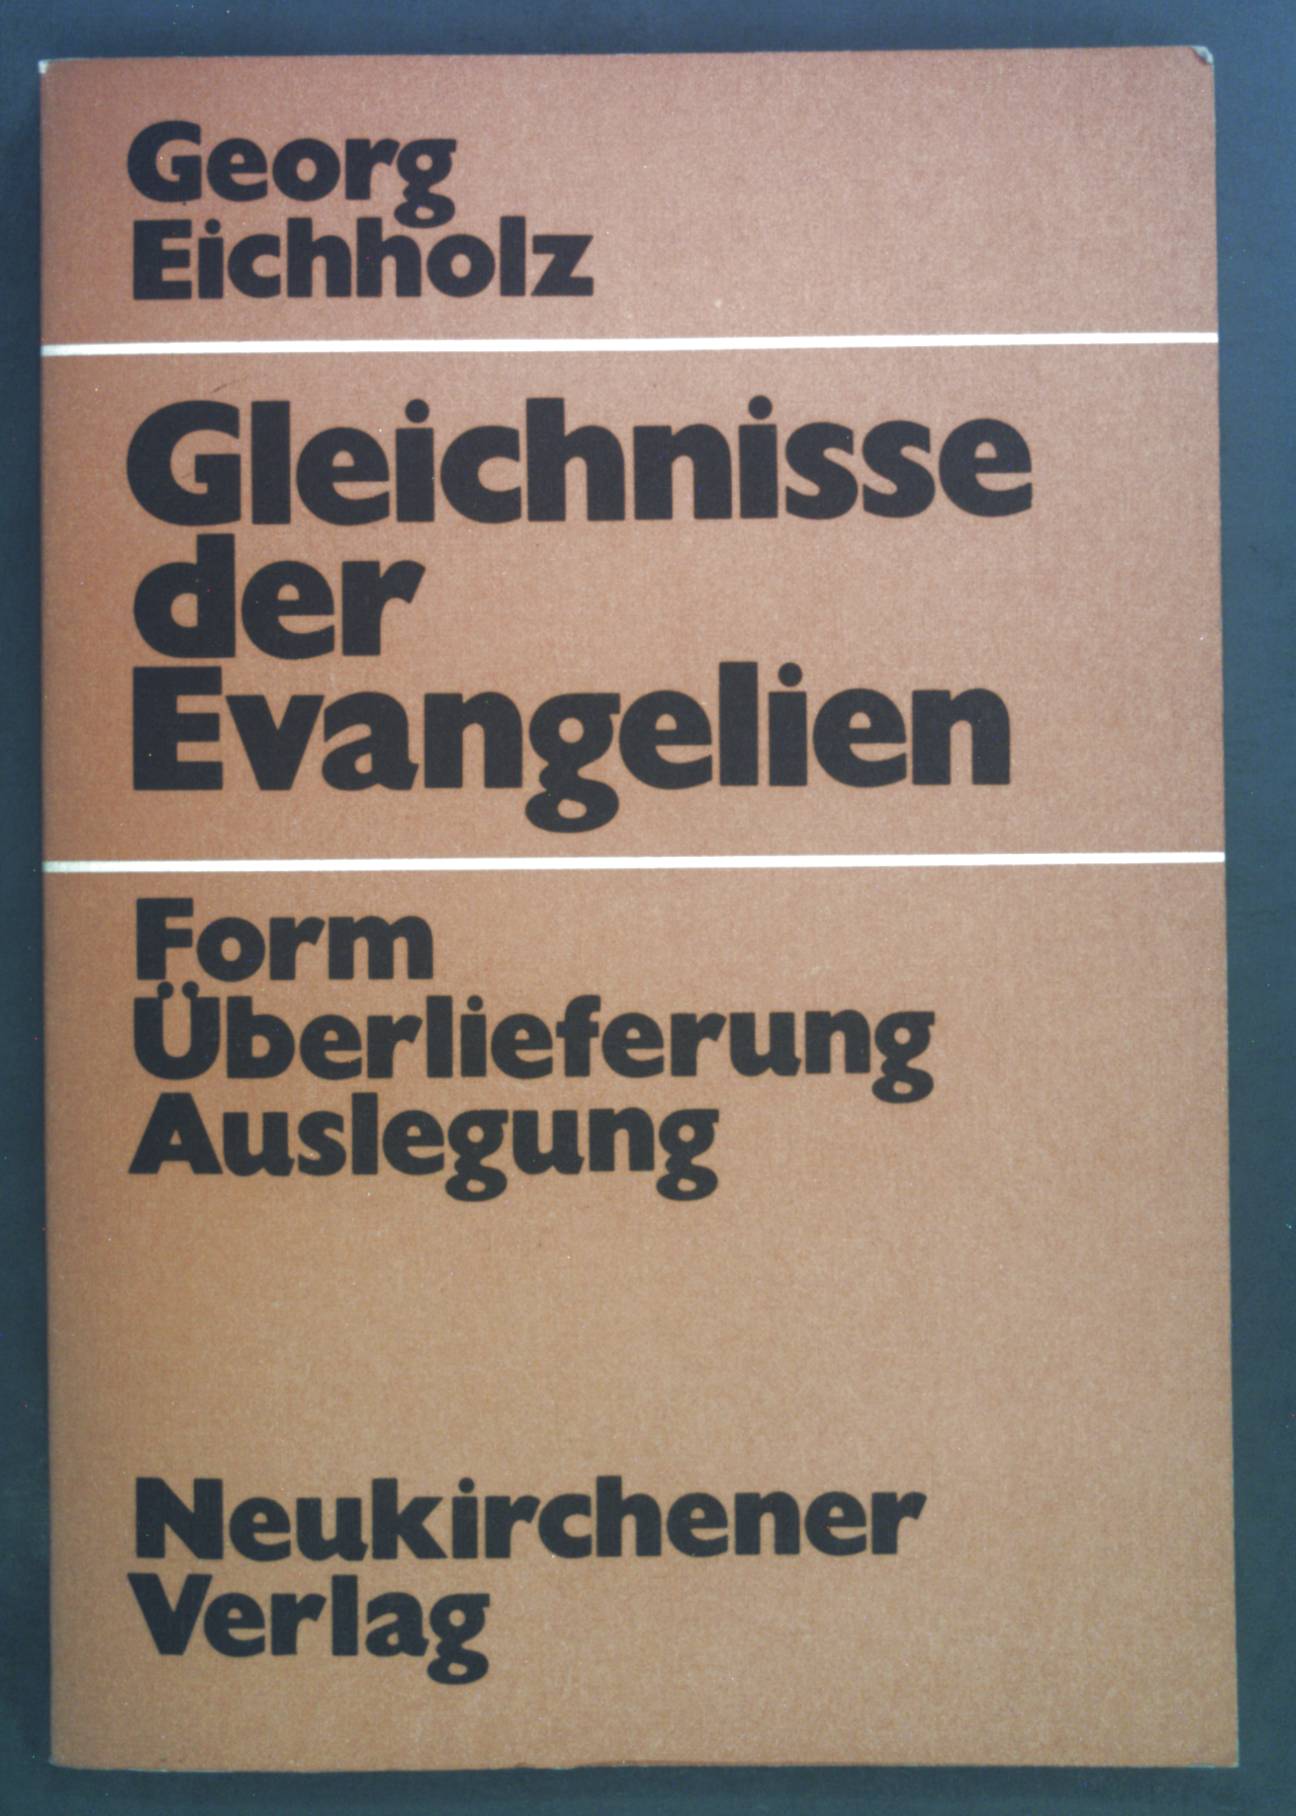 Gleichnisse der Evangelien : Form, Überlieferung, Auslegung. - Eichholz, Georg